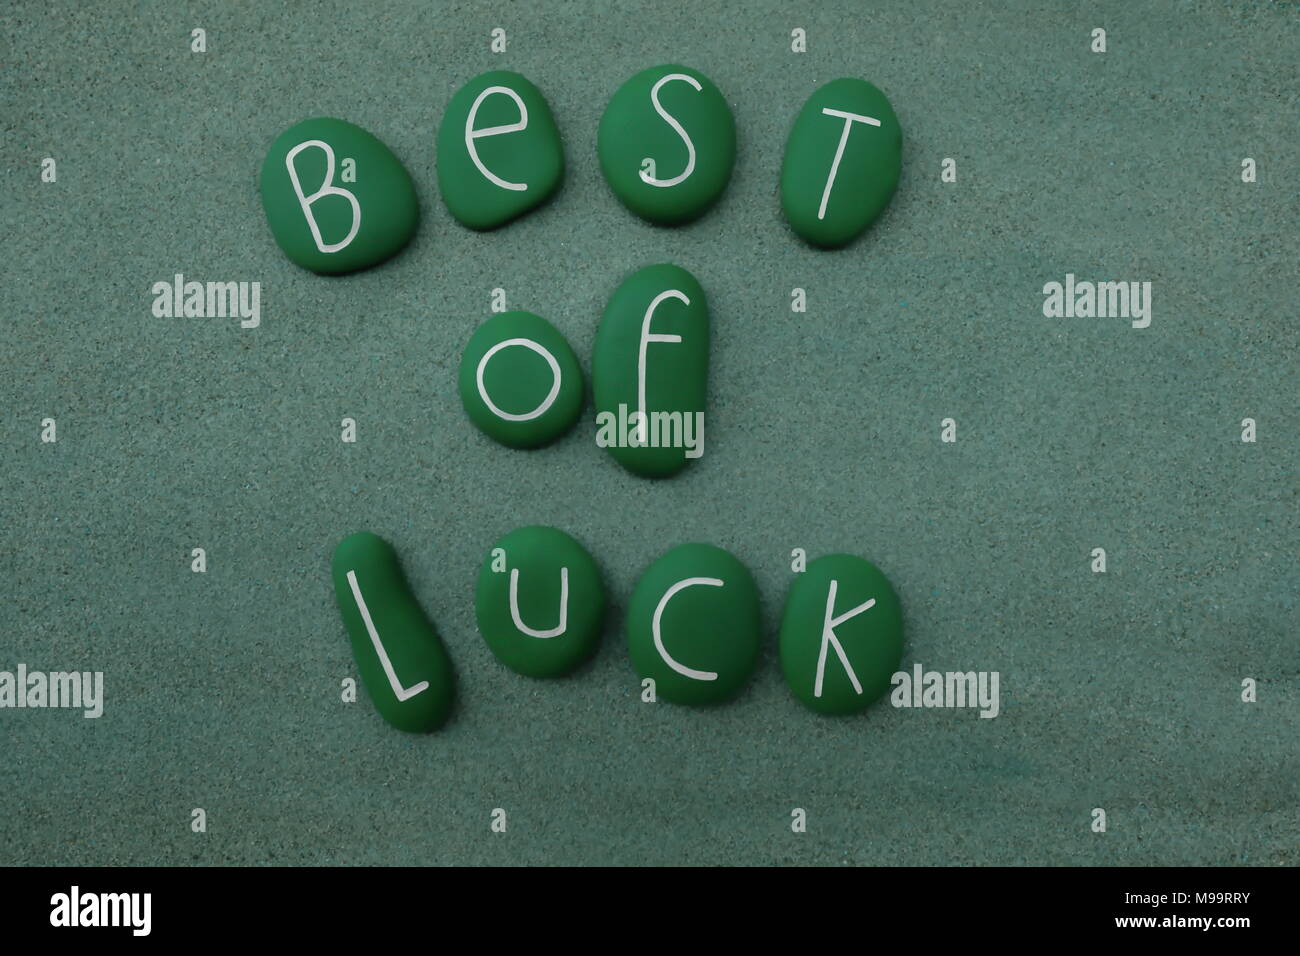 Mieux de la chance avec pierres peintes en vert Banque D'Images